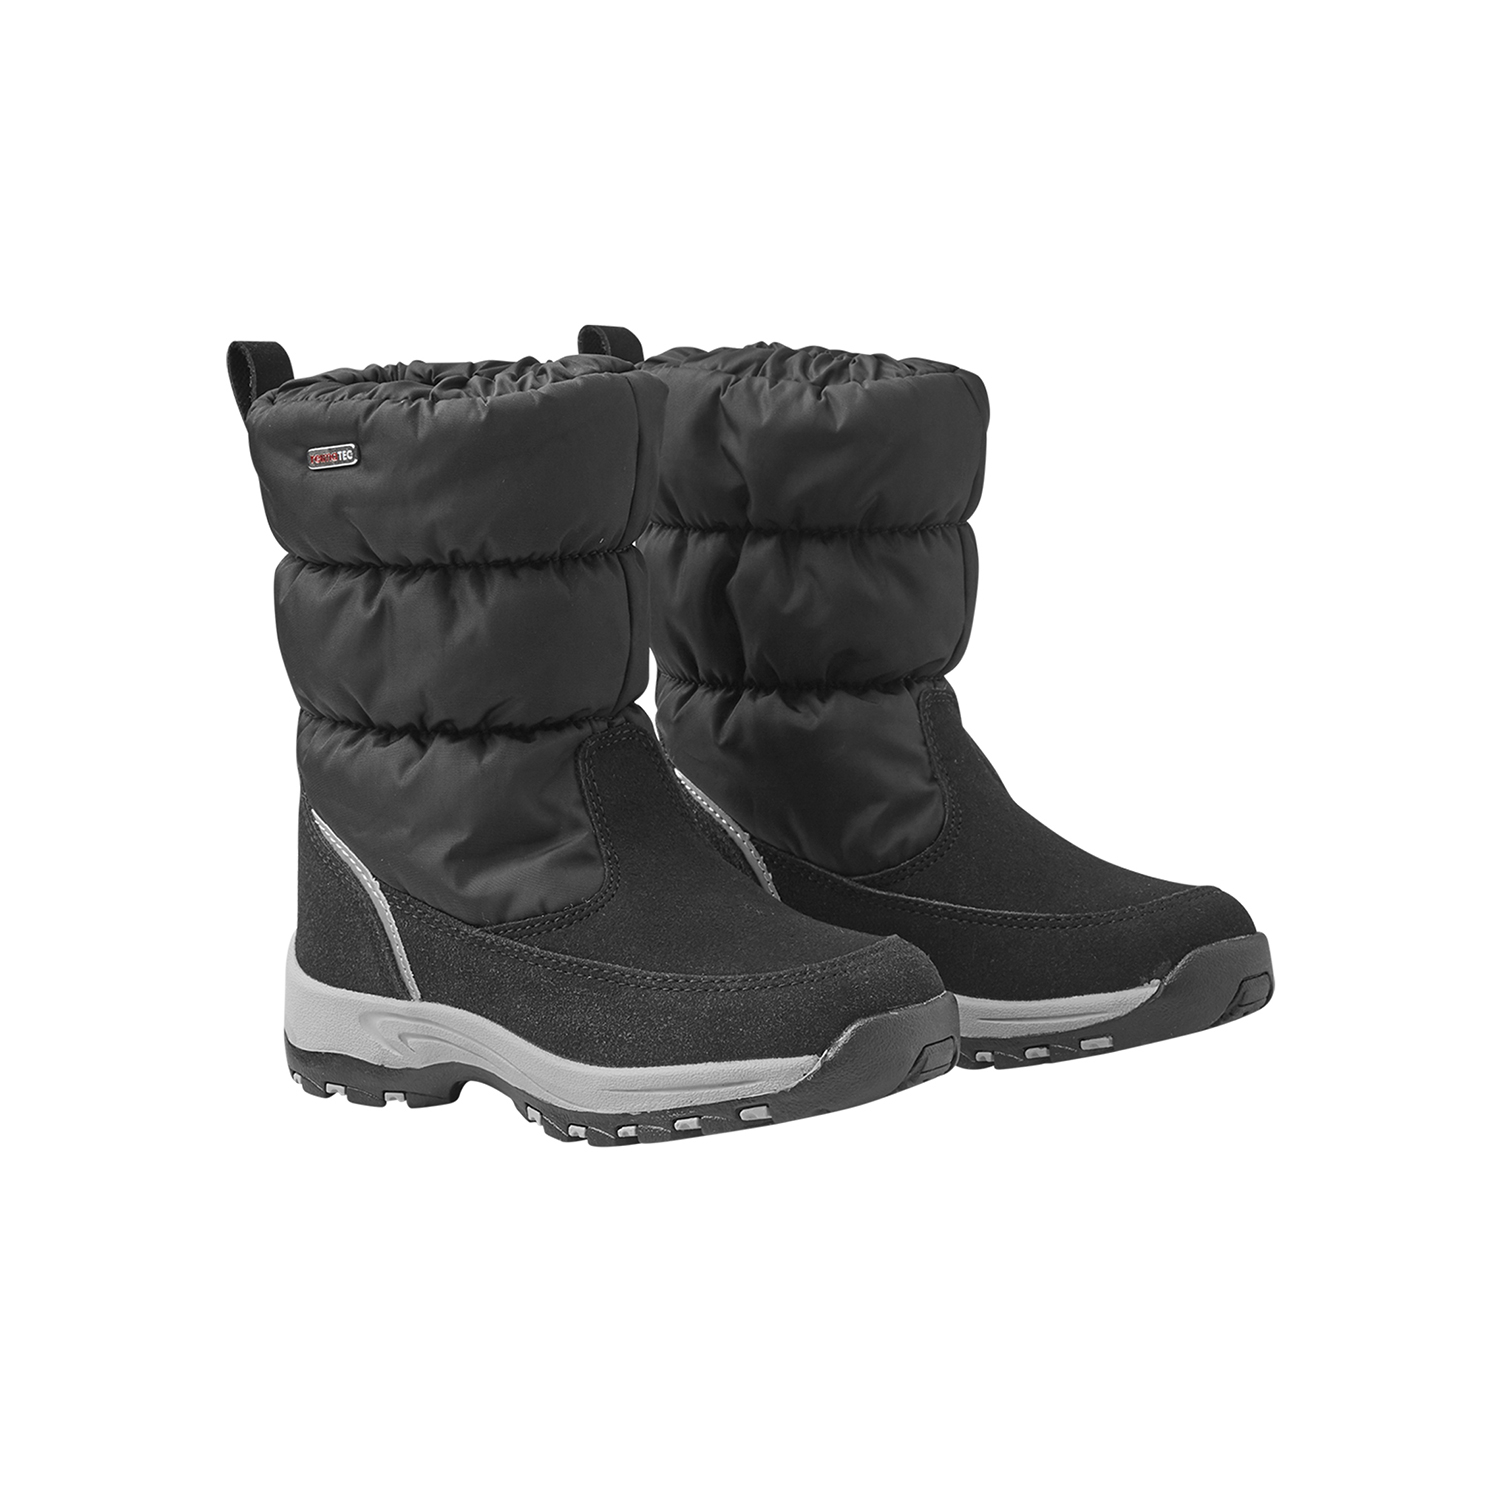 Zimowe buty dla dziecka Reima Vimpeli soft black - 26